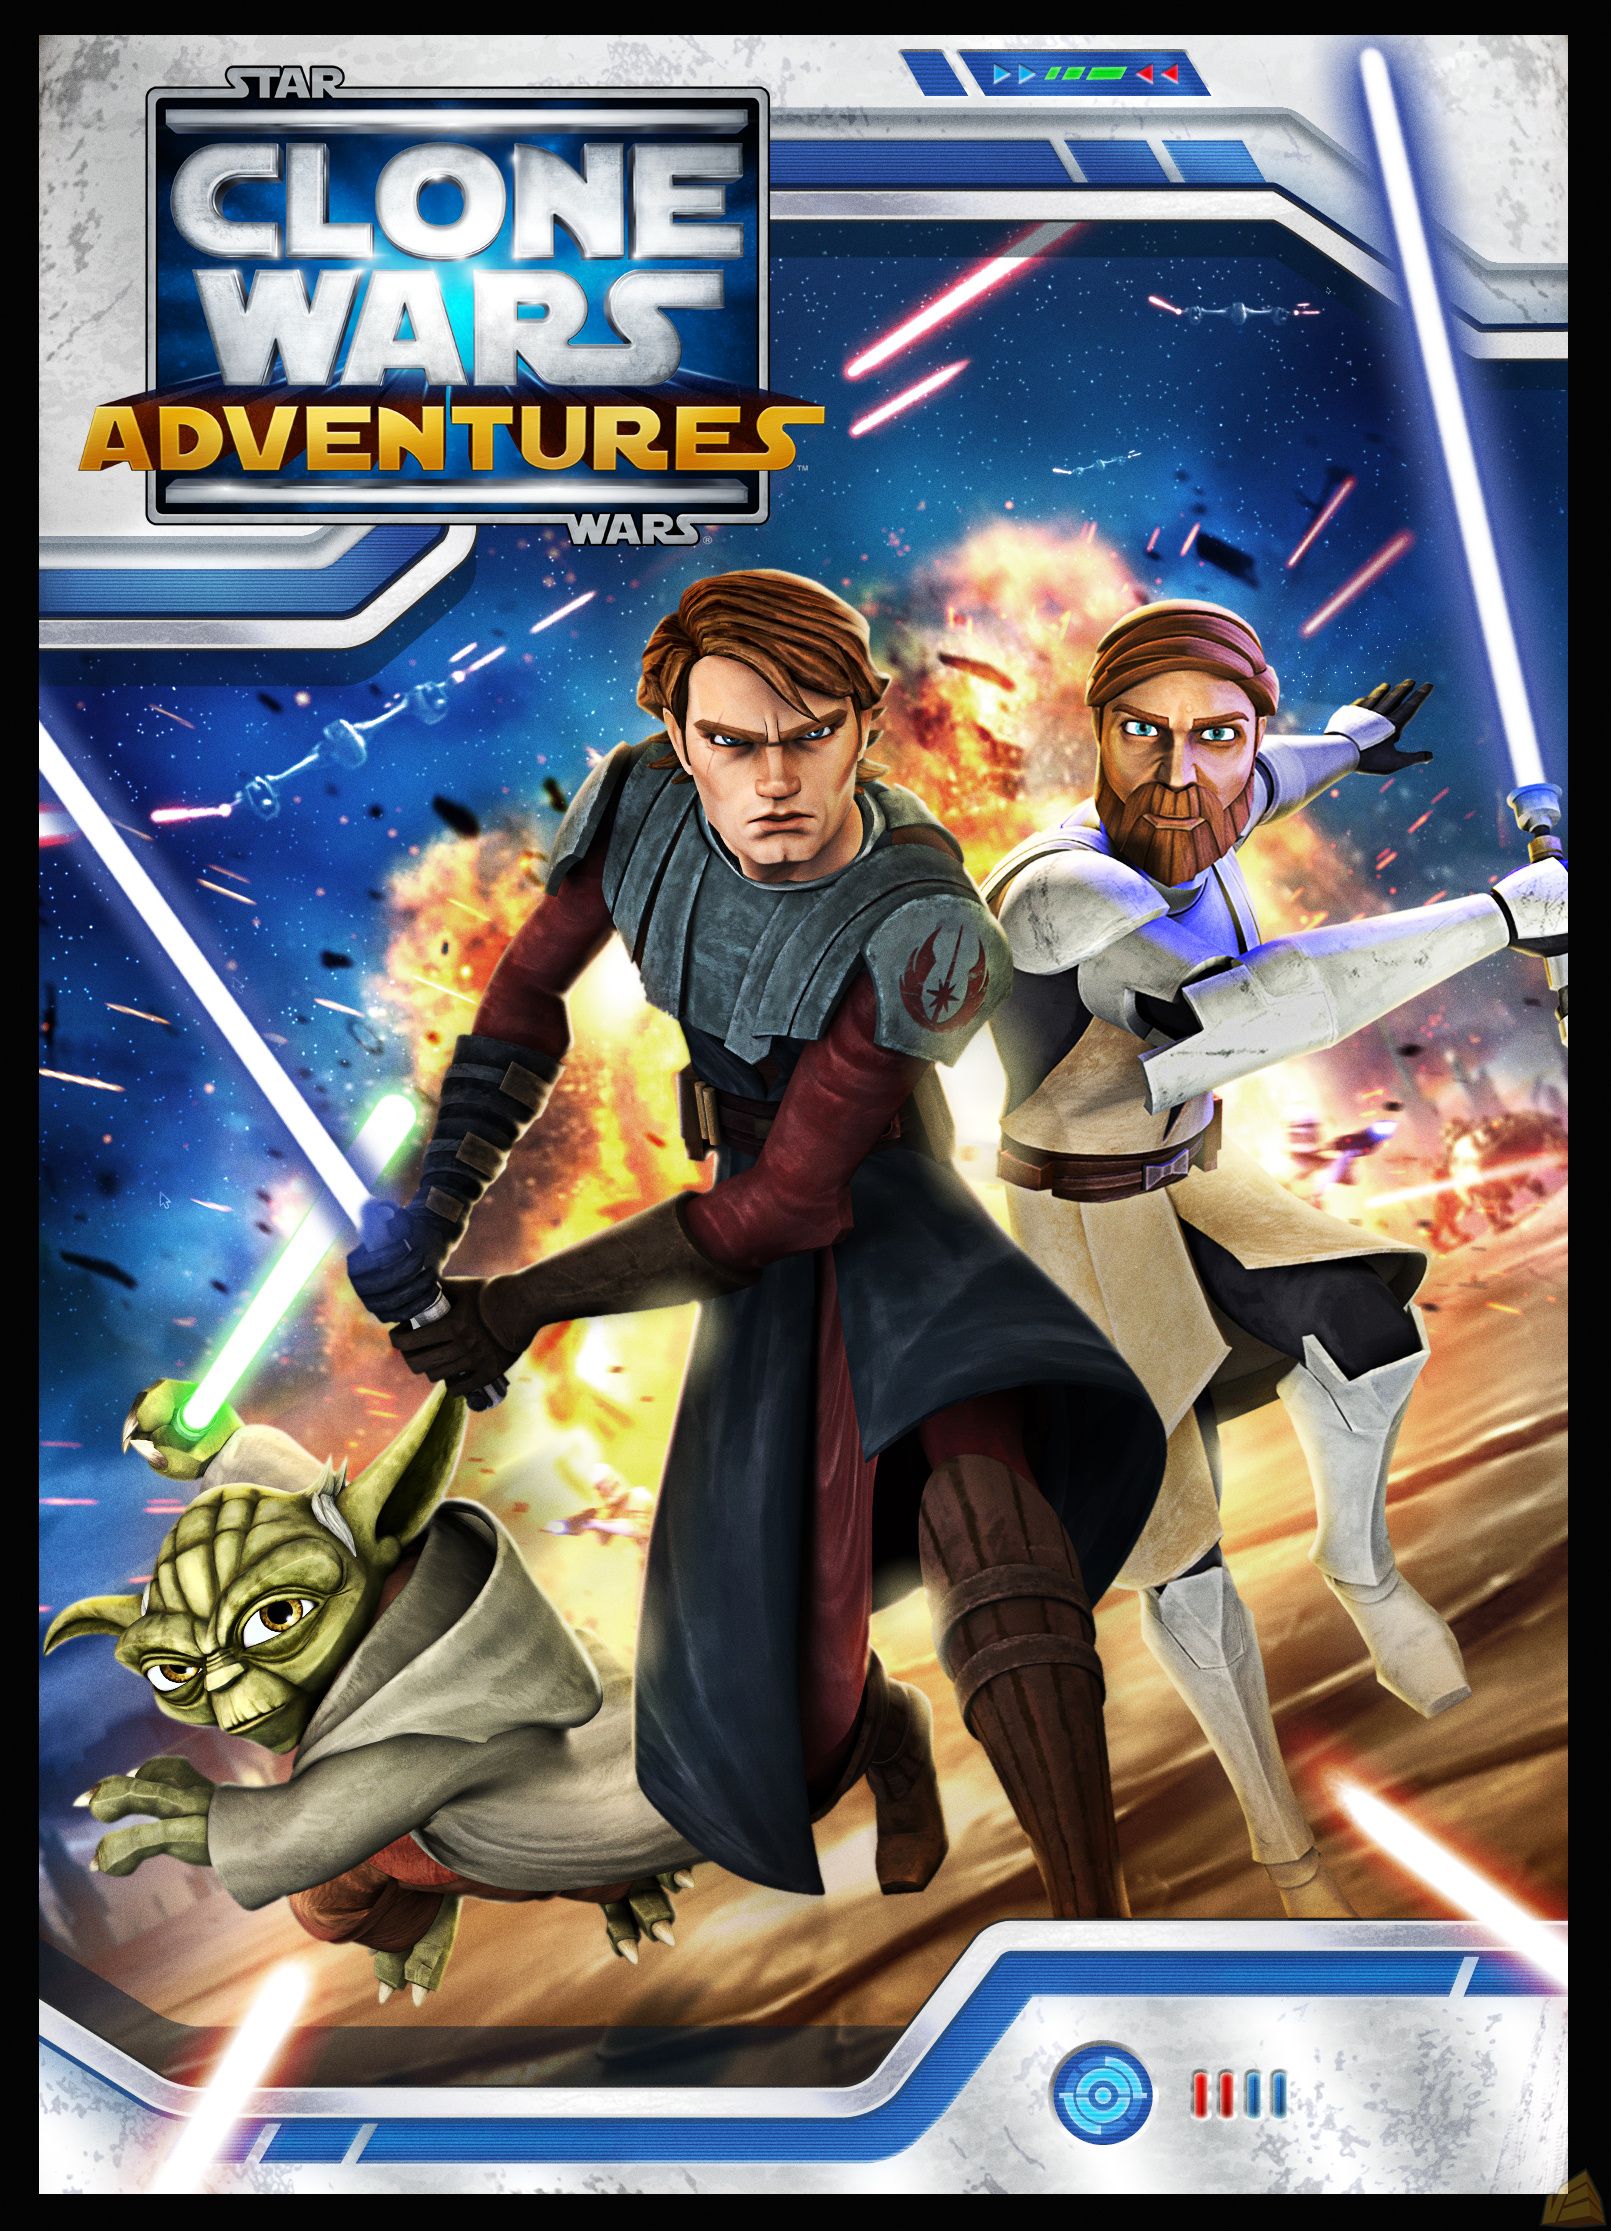 Star wars clone wars adventures online game